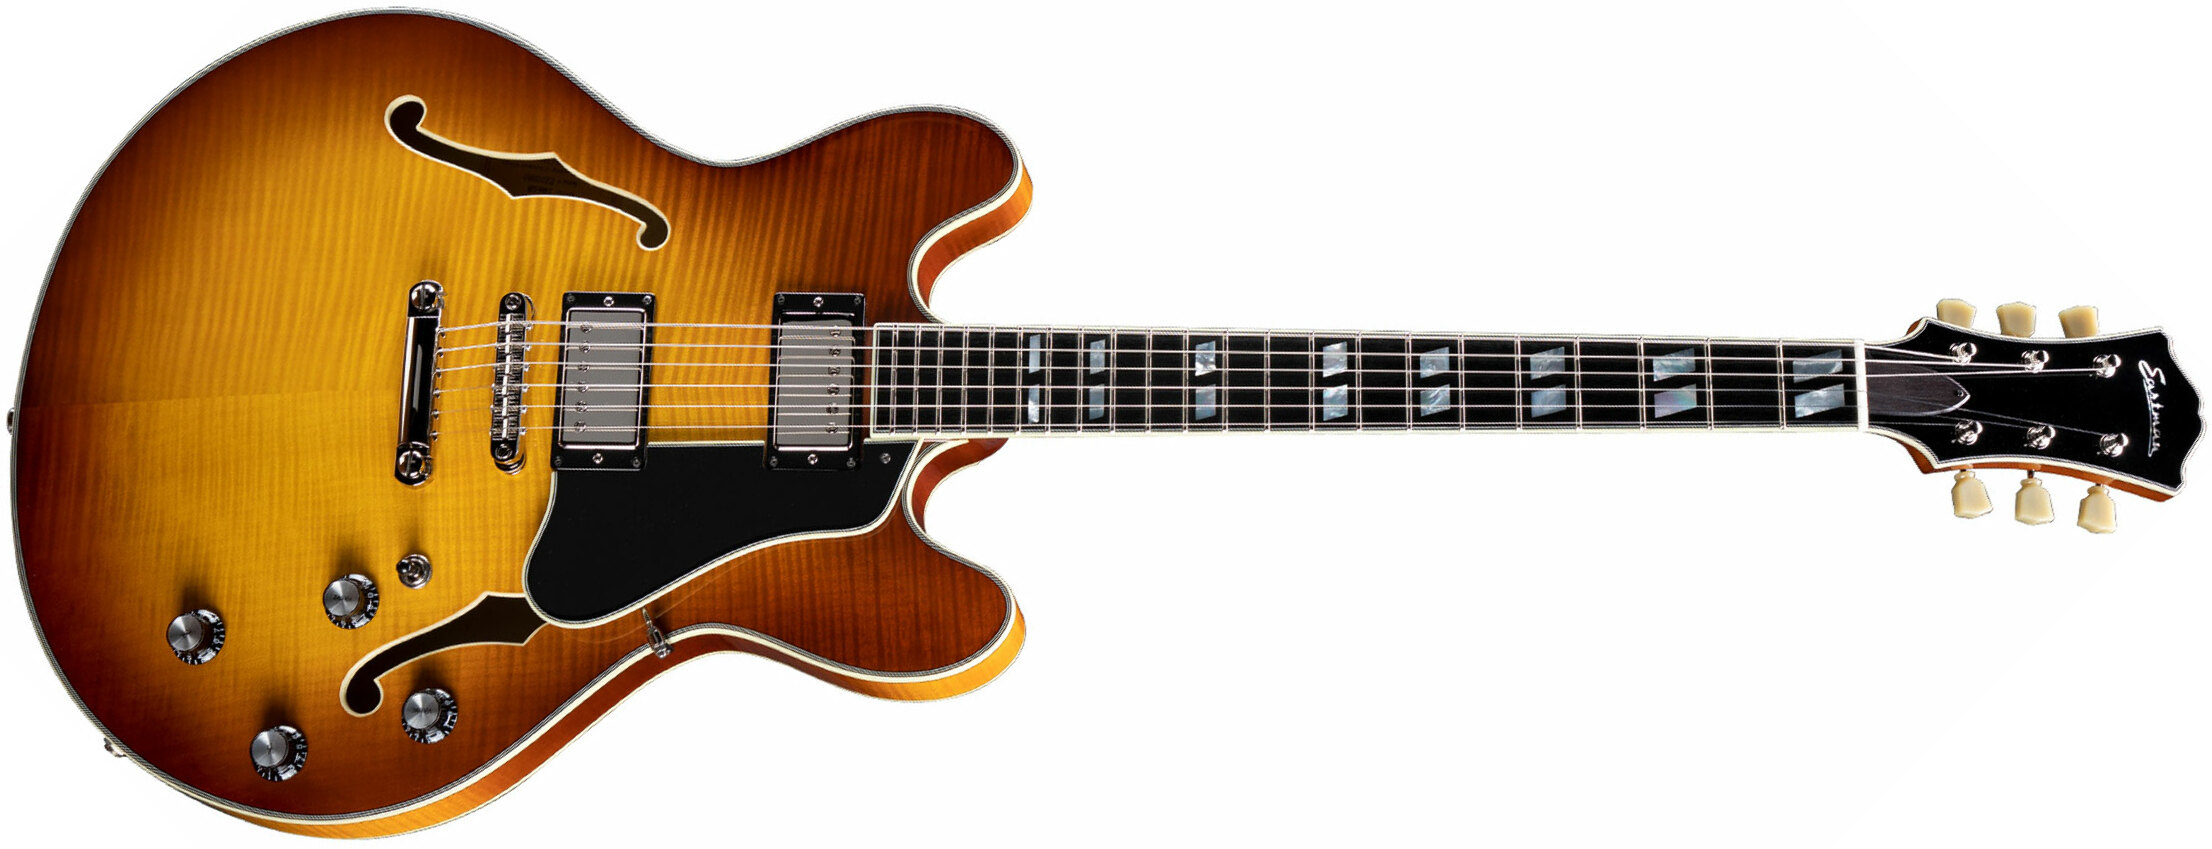 Eastman T486 Thinline Laminate Tout Erable Hh Seymour Duncan Ht Eb - Goldburst - Guitare Électrique 1/2 Caisse - Main picture